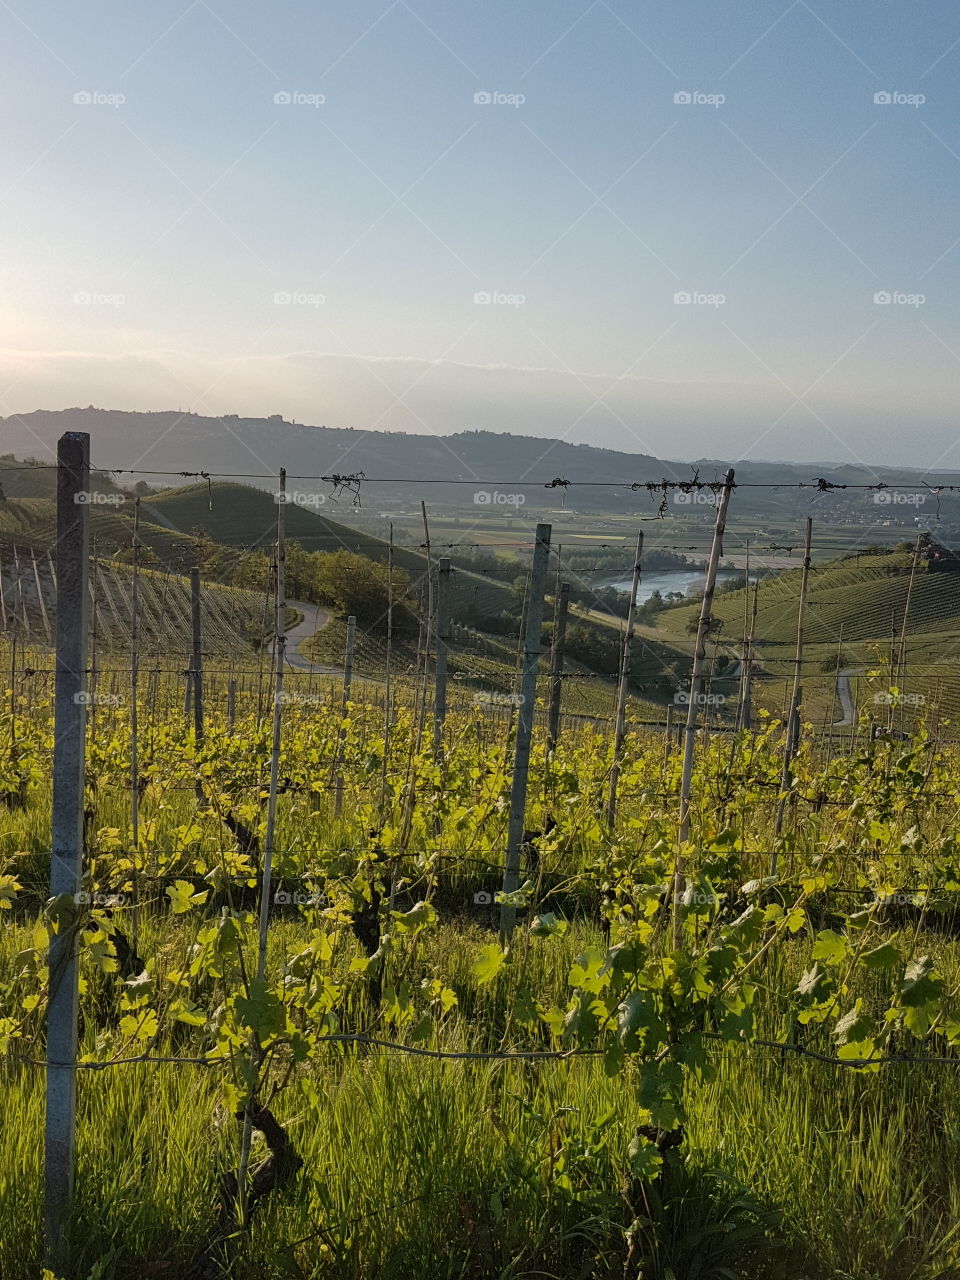 Barbaresco vineyards landscape at sunset in spring